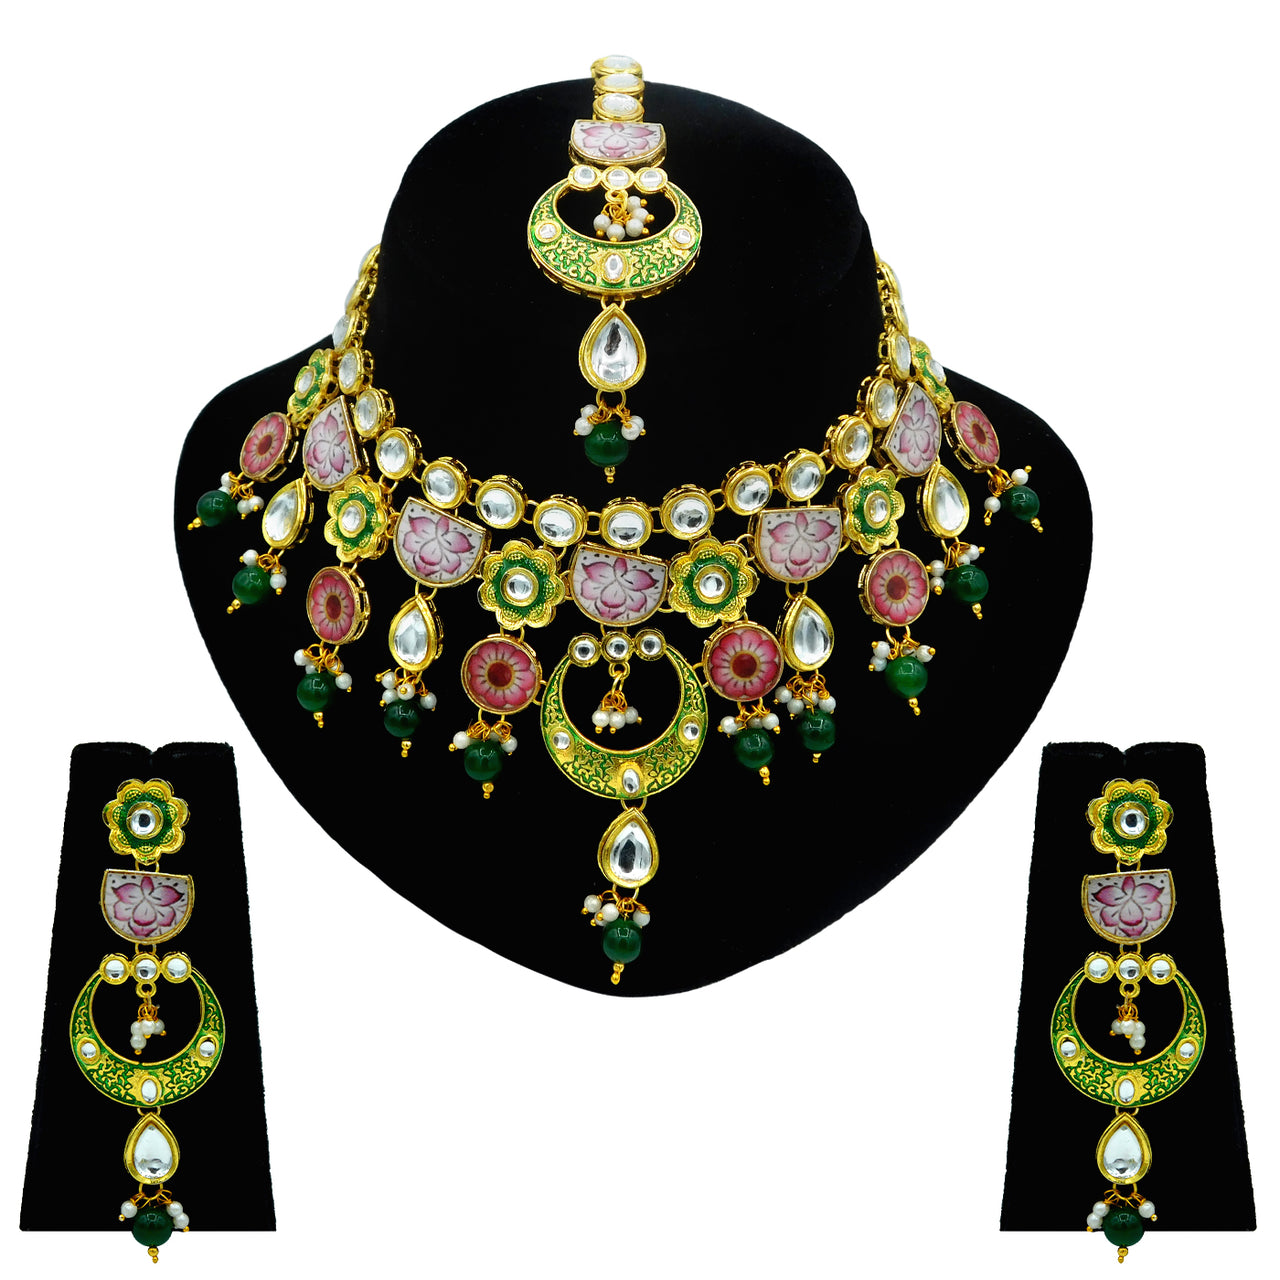 Sujwel Gold Plated Kundan Floral Design Choker Necklace Set (08-0228) - Sujwel